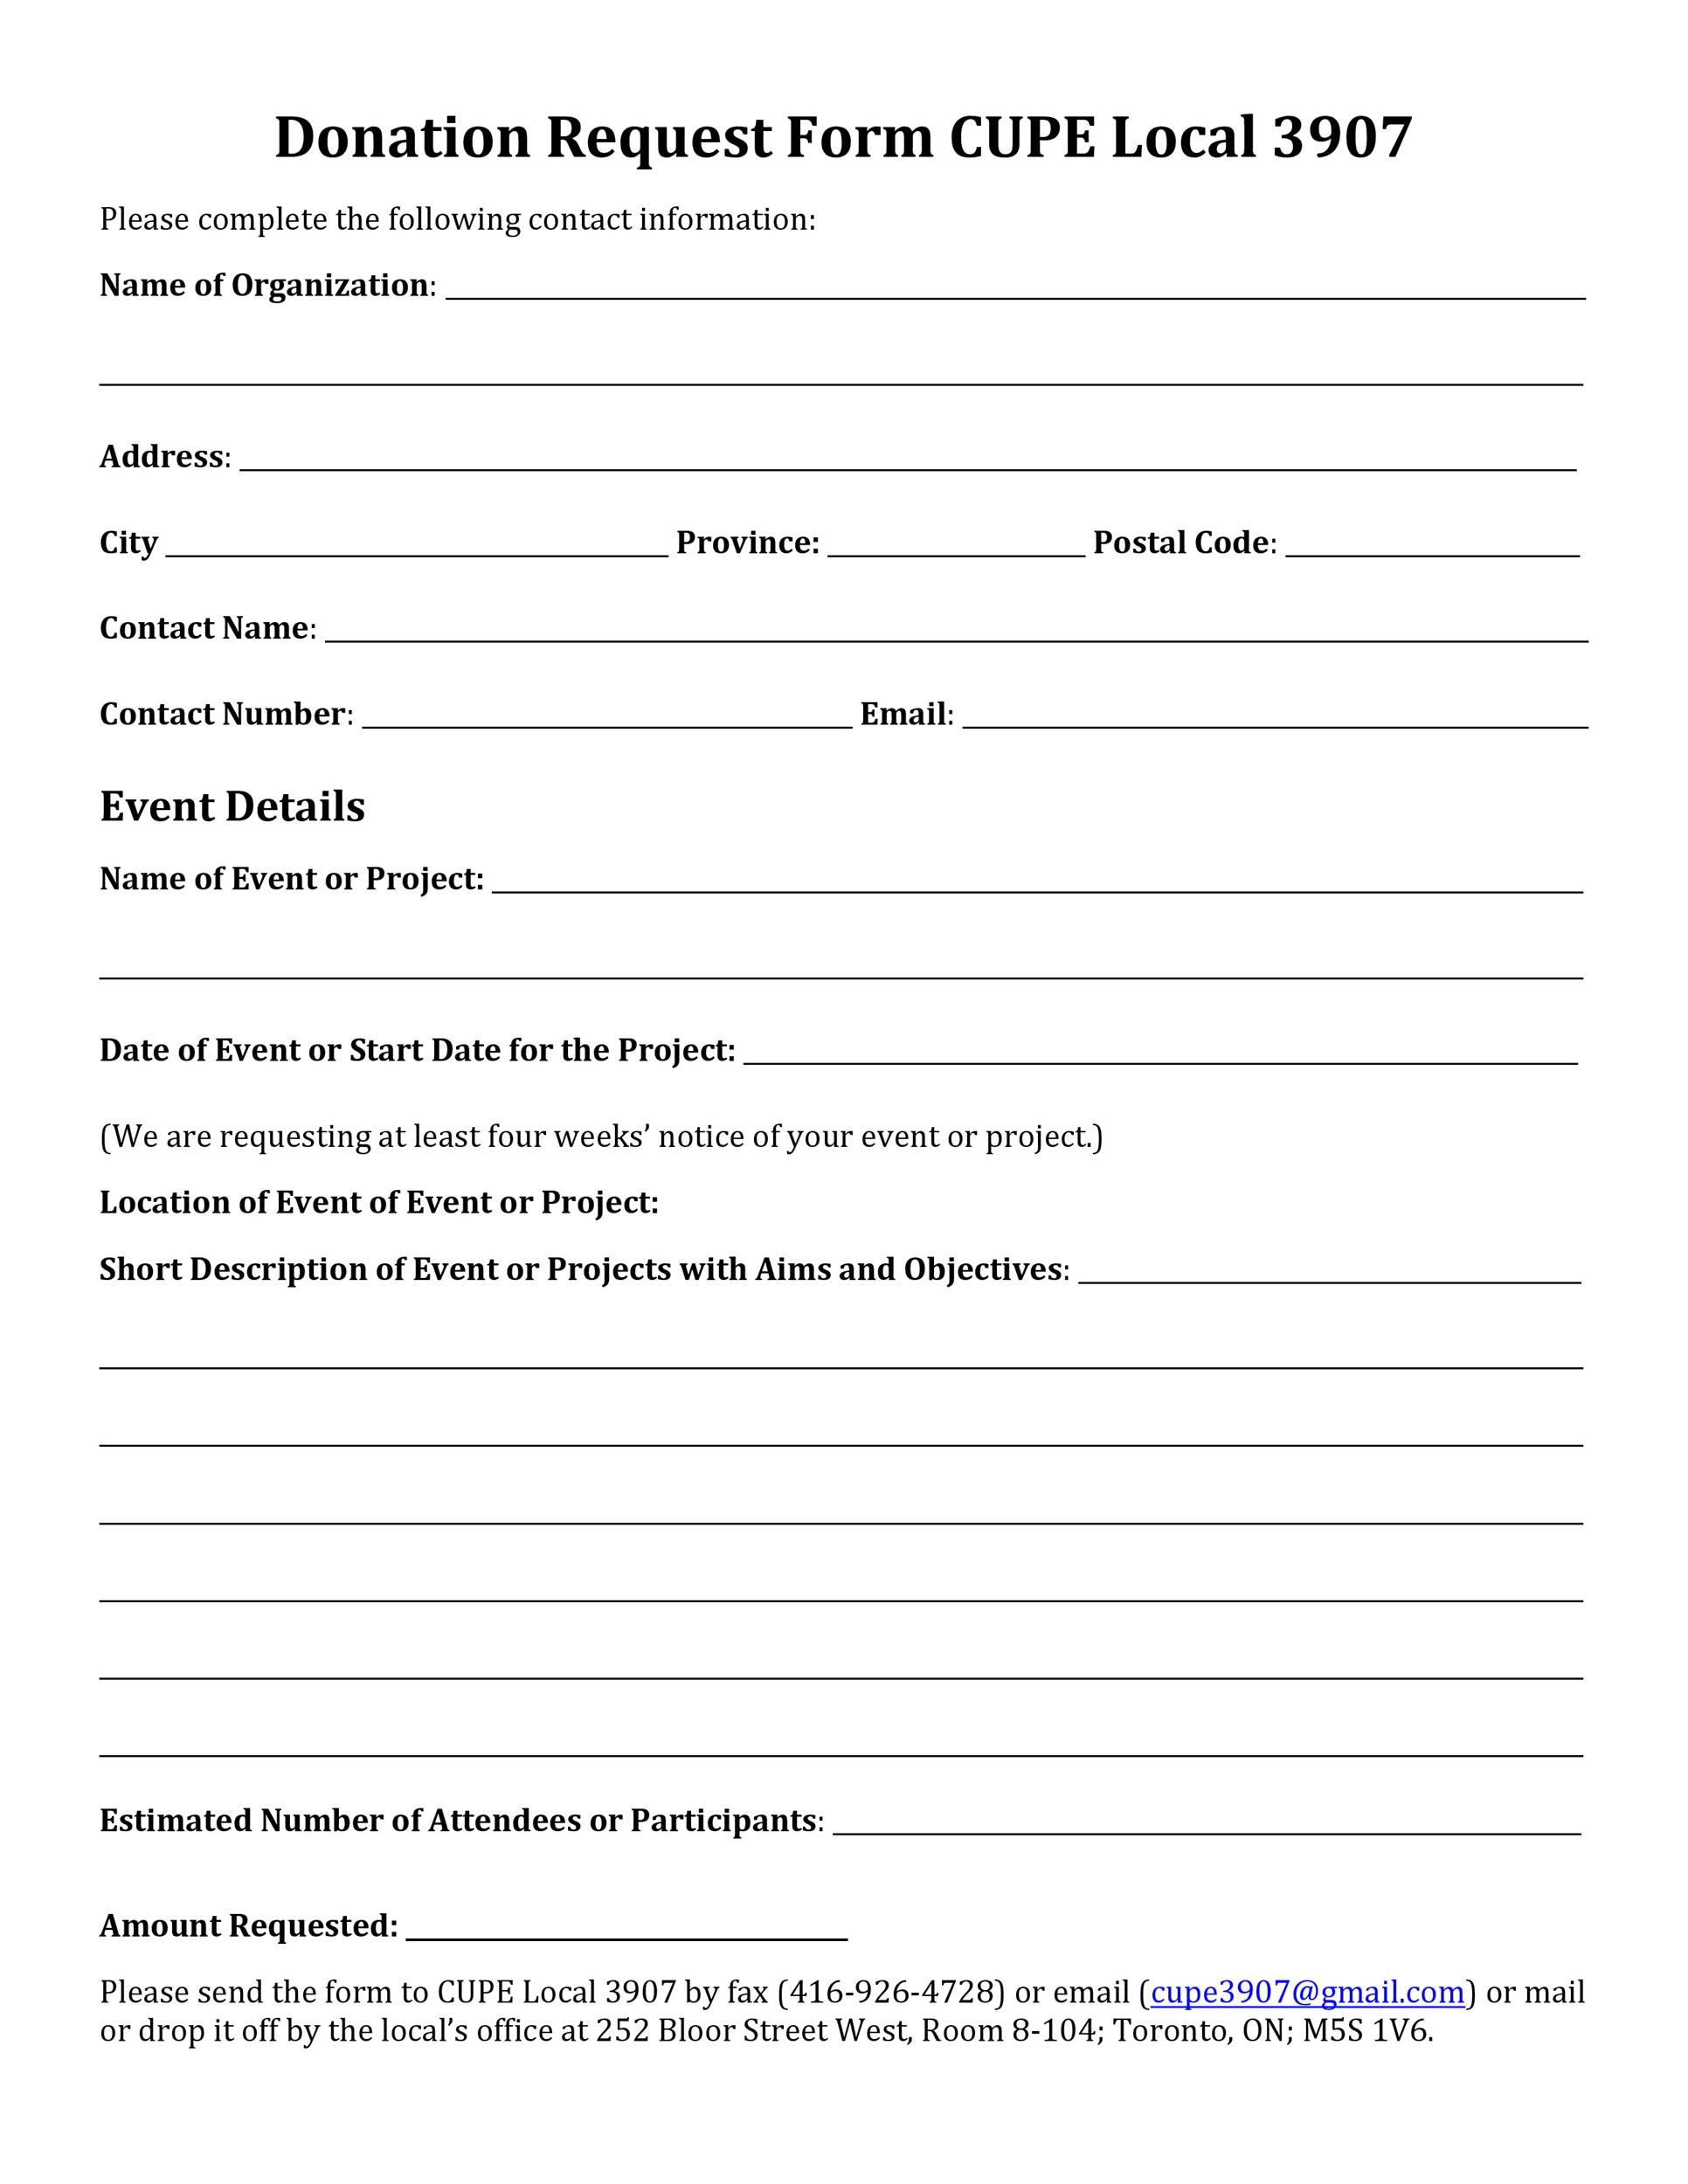 Safeway Donation Request Form